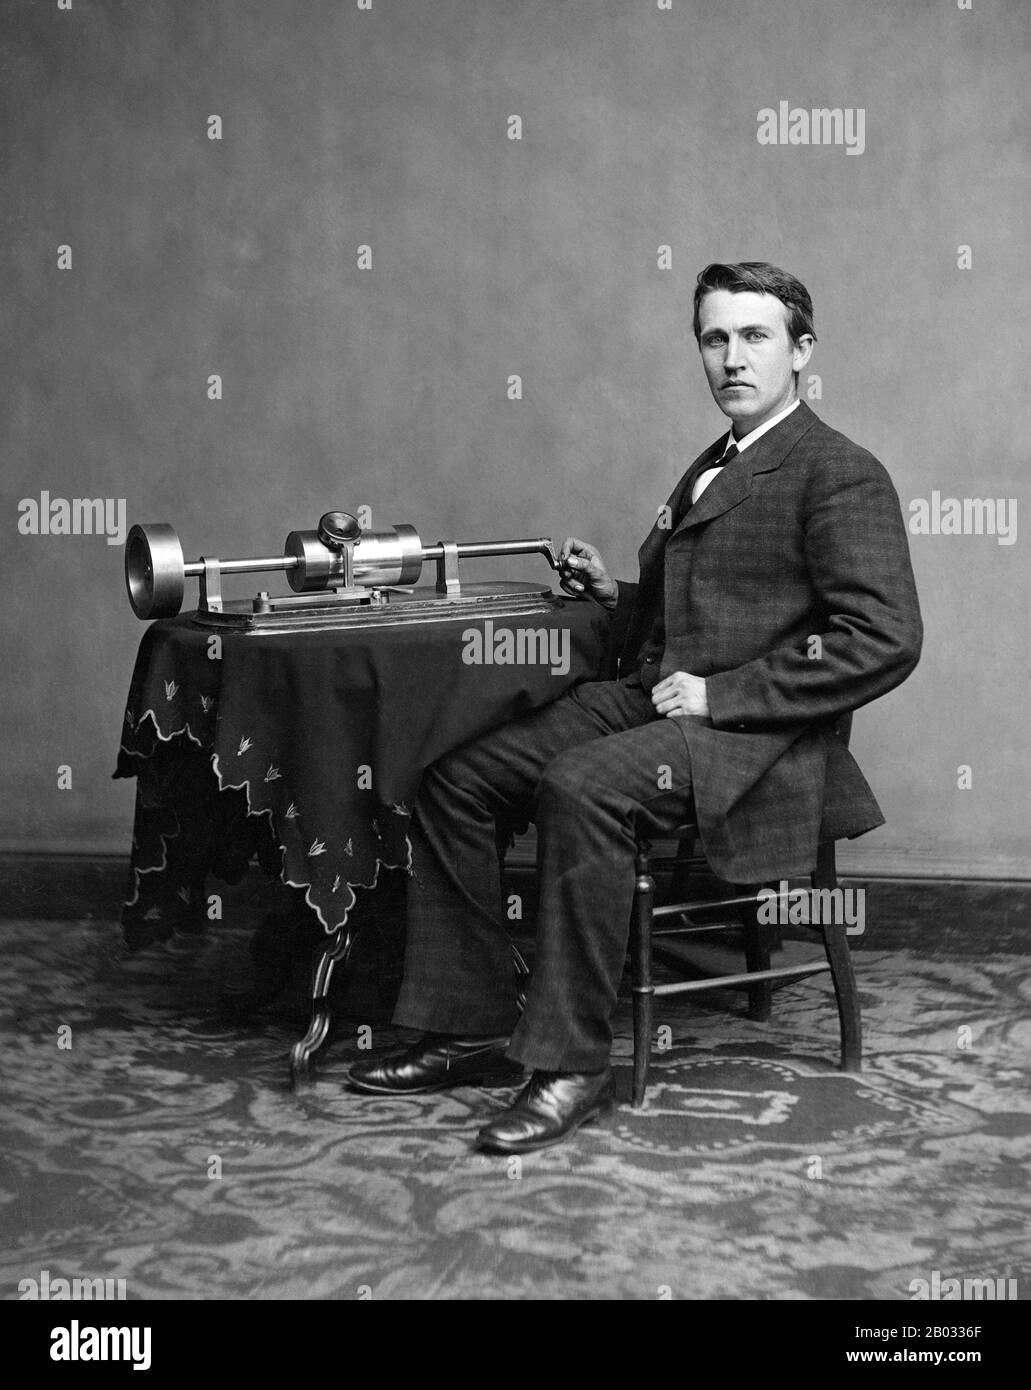 Thomas Alva Edison (Londra, 11 febbraio 1847 – Parigi, 18 ottobre 1931) è stato un . Ha sviluppato molti dispositivi che hanno influenzato notevolmente la vita in tutto il mondo, compreso il fonografo, la macchina fotografica di movimento dell'immagine e la lampadina elettrica di lunga durata e pratica di luce. Edison era un inventore prolifico, che deteneva 1.093 brevetti statunitensi a suo nome, così come molti brevetti nel Regno Unito, in Francia e in Germania. Più significativo del numero di brevetti di Edison è stato l'impatto diffuso delle sue invenzioni: Energia elettrica e luce utilità, registrazione del suono, e immagini di movimento tutti i 'netto' Foto Stock